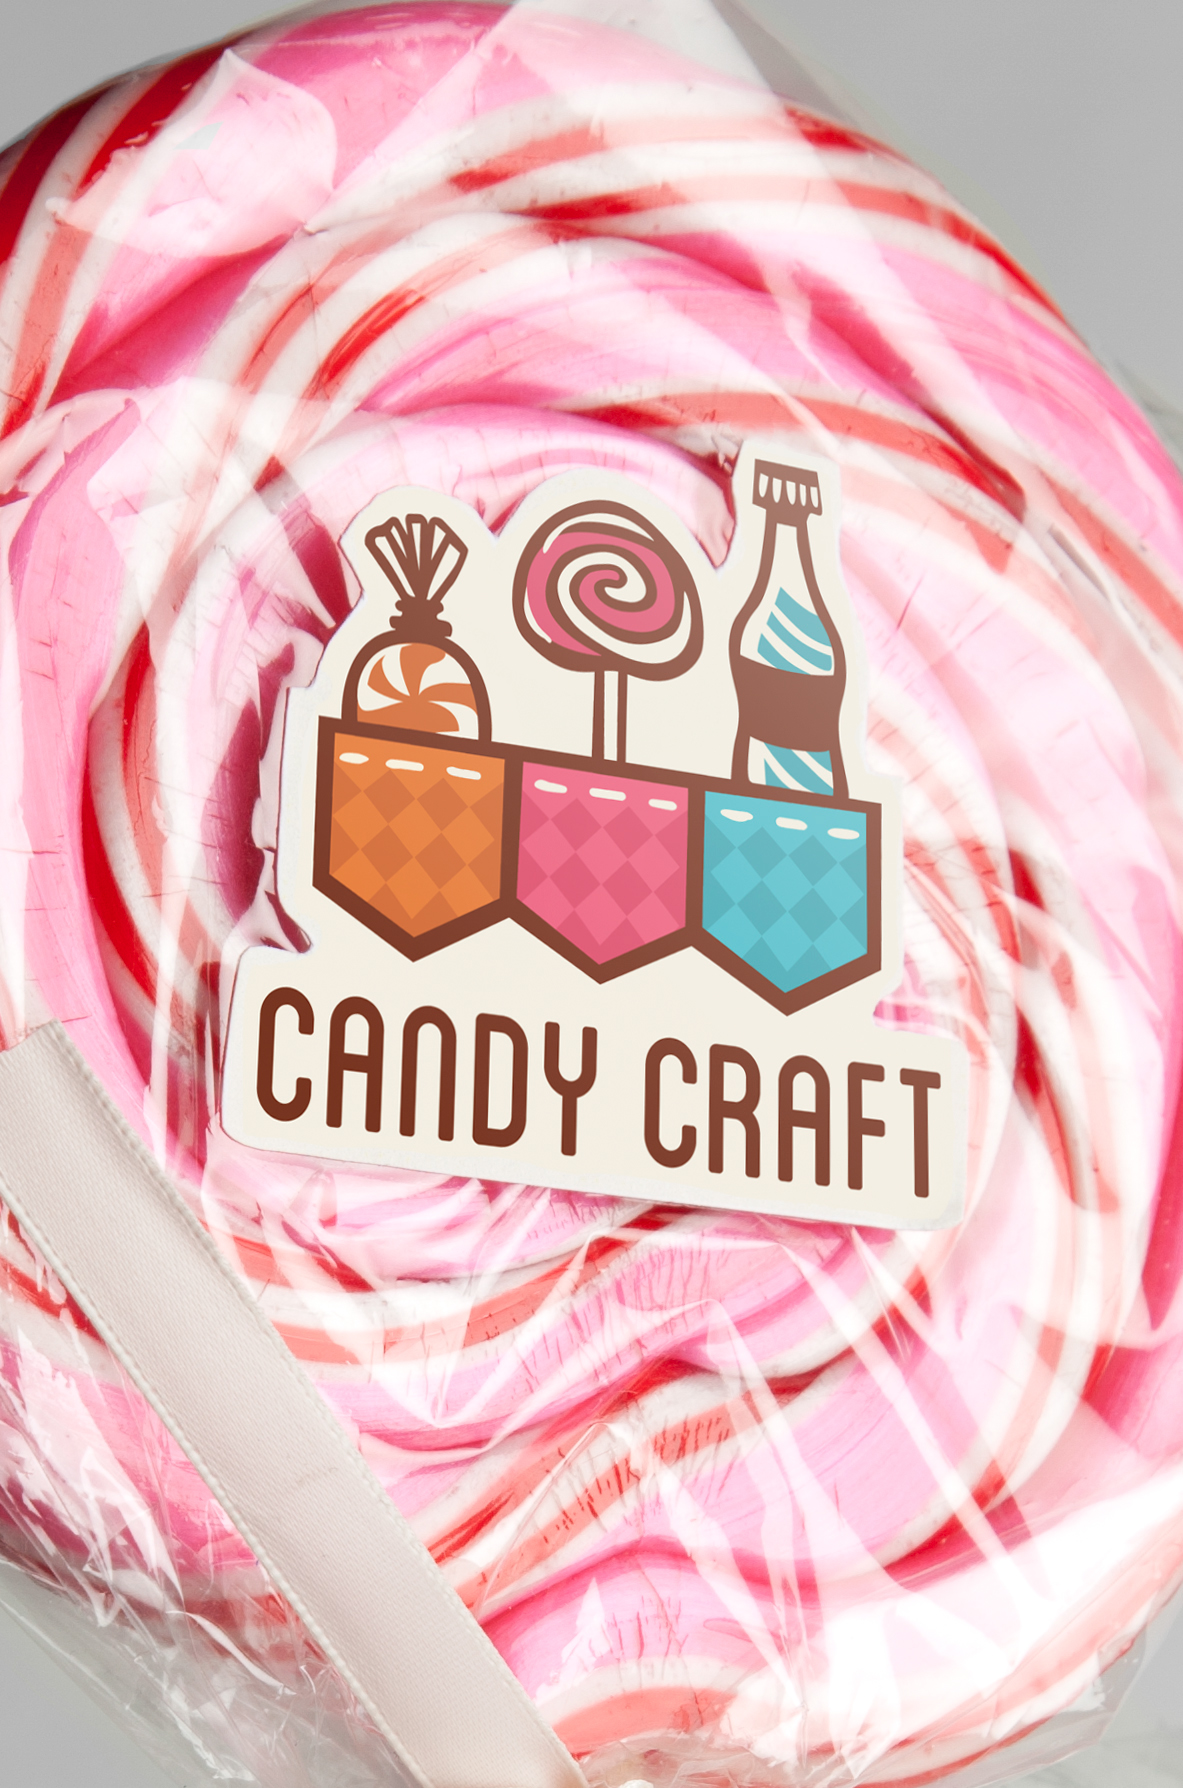 Candy Craft logo soda bottle wrapper Candy business card envelope standards manual colorful orange pink blue swirl bag lollipop